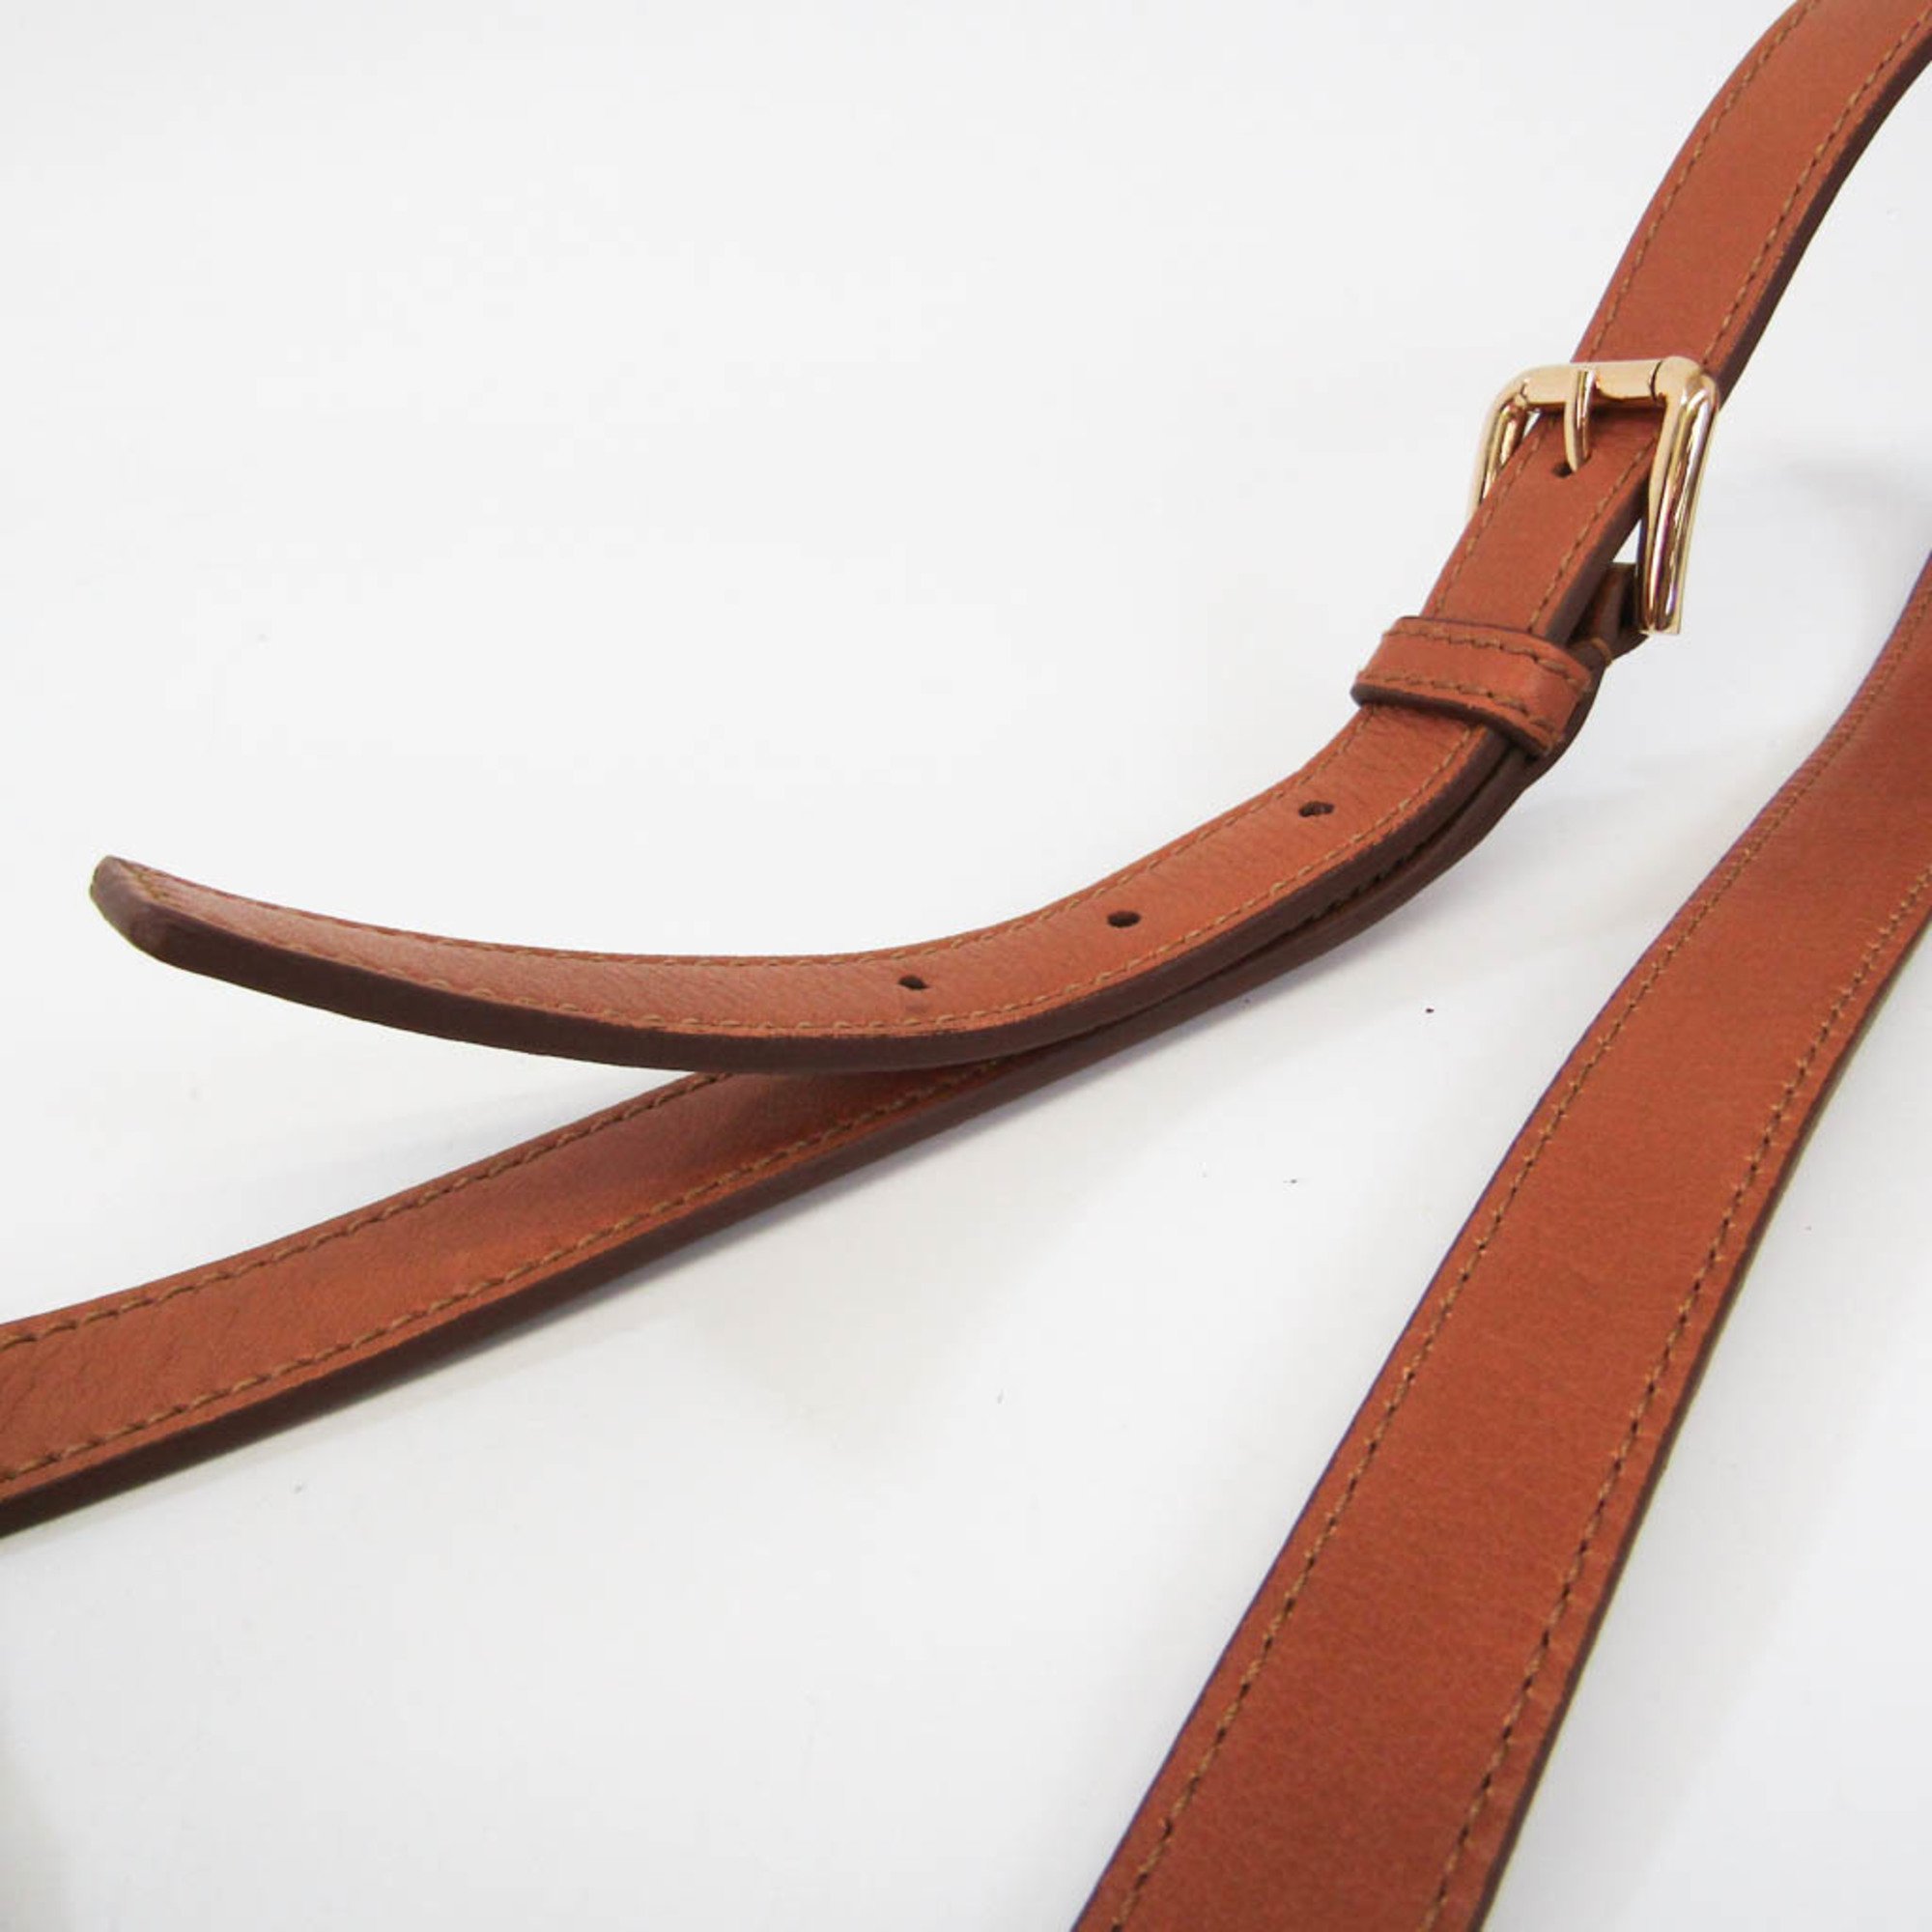 Dolce & Gabbana Women's Leather Handbag,Shoulder Bag Light Brown